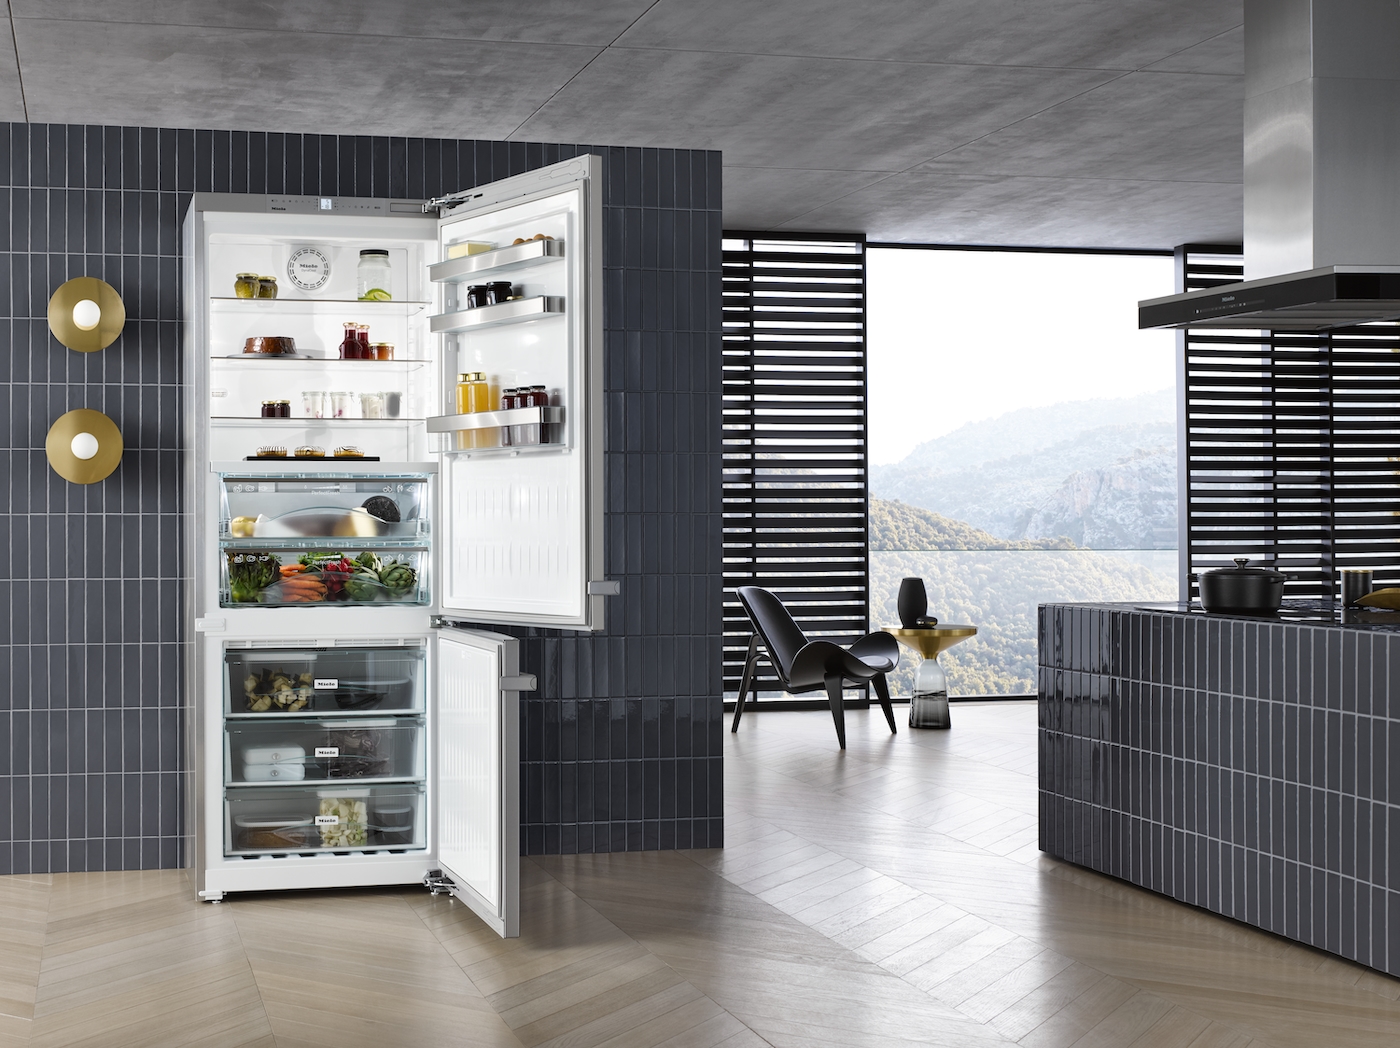 Sudraba ledusskapis ar saldētavu, SoftClose un PerfectFresh funkcijām, 75 cm platums (KFN 16947 D) product photo View3 ZOOM